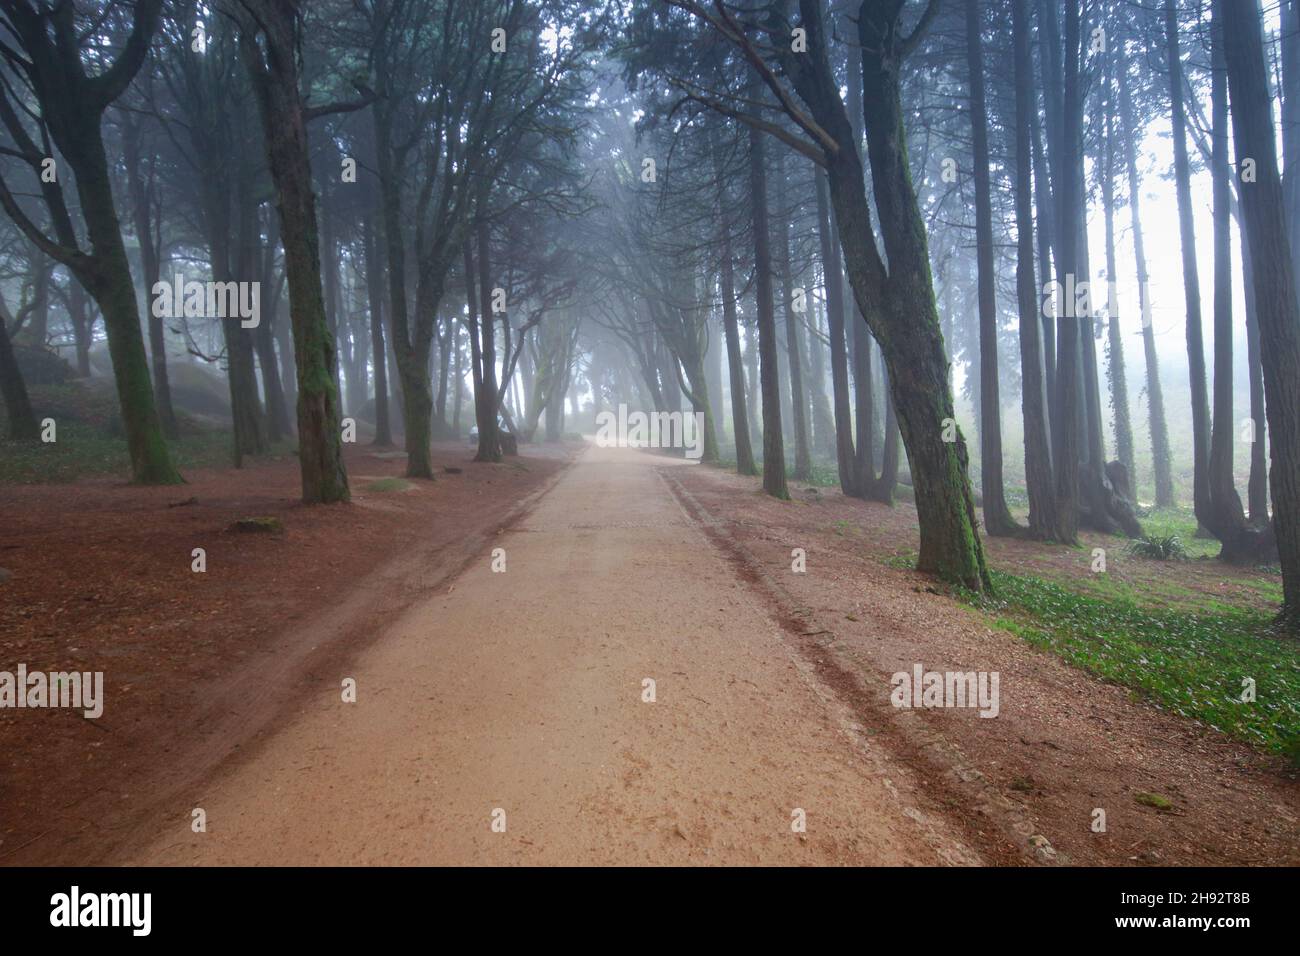 Percorso in una foresta coperta di nebbia e circondata da alberi. Bel mistico legno scuro Foggy Foto Stock